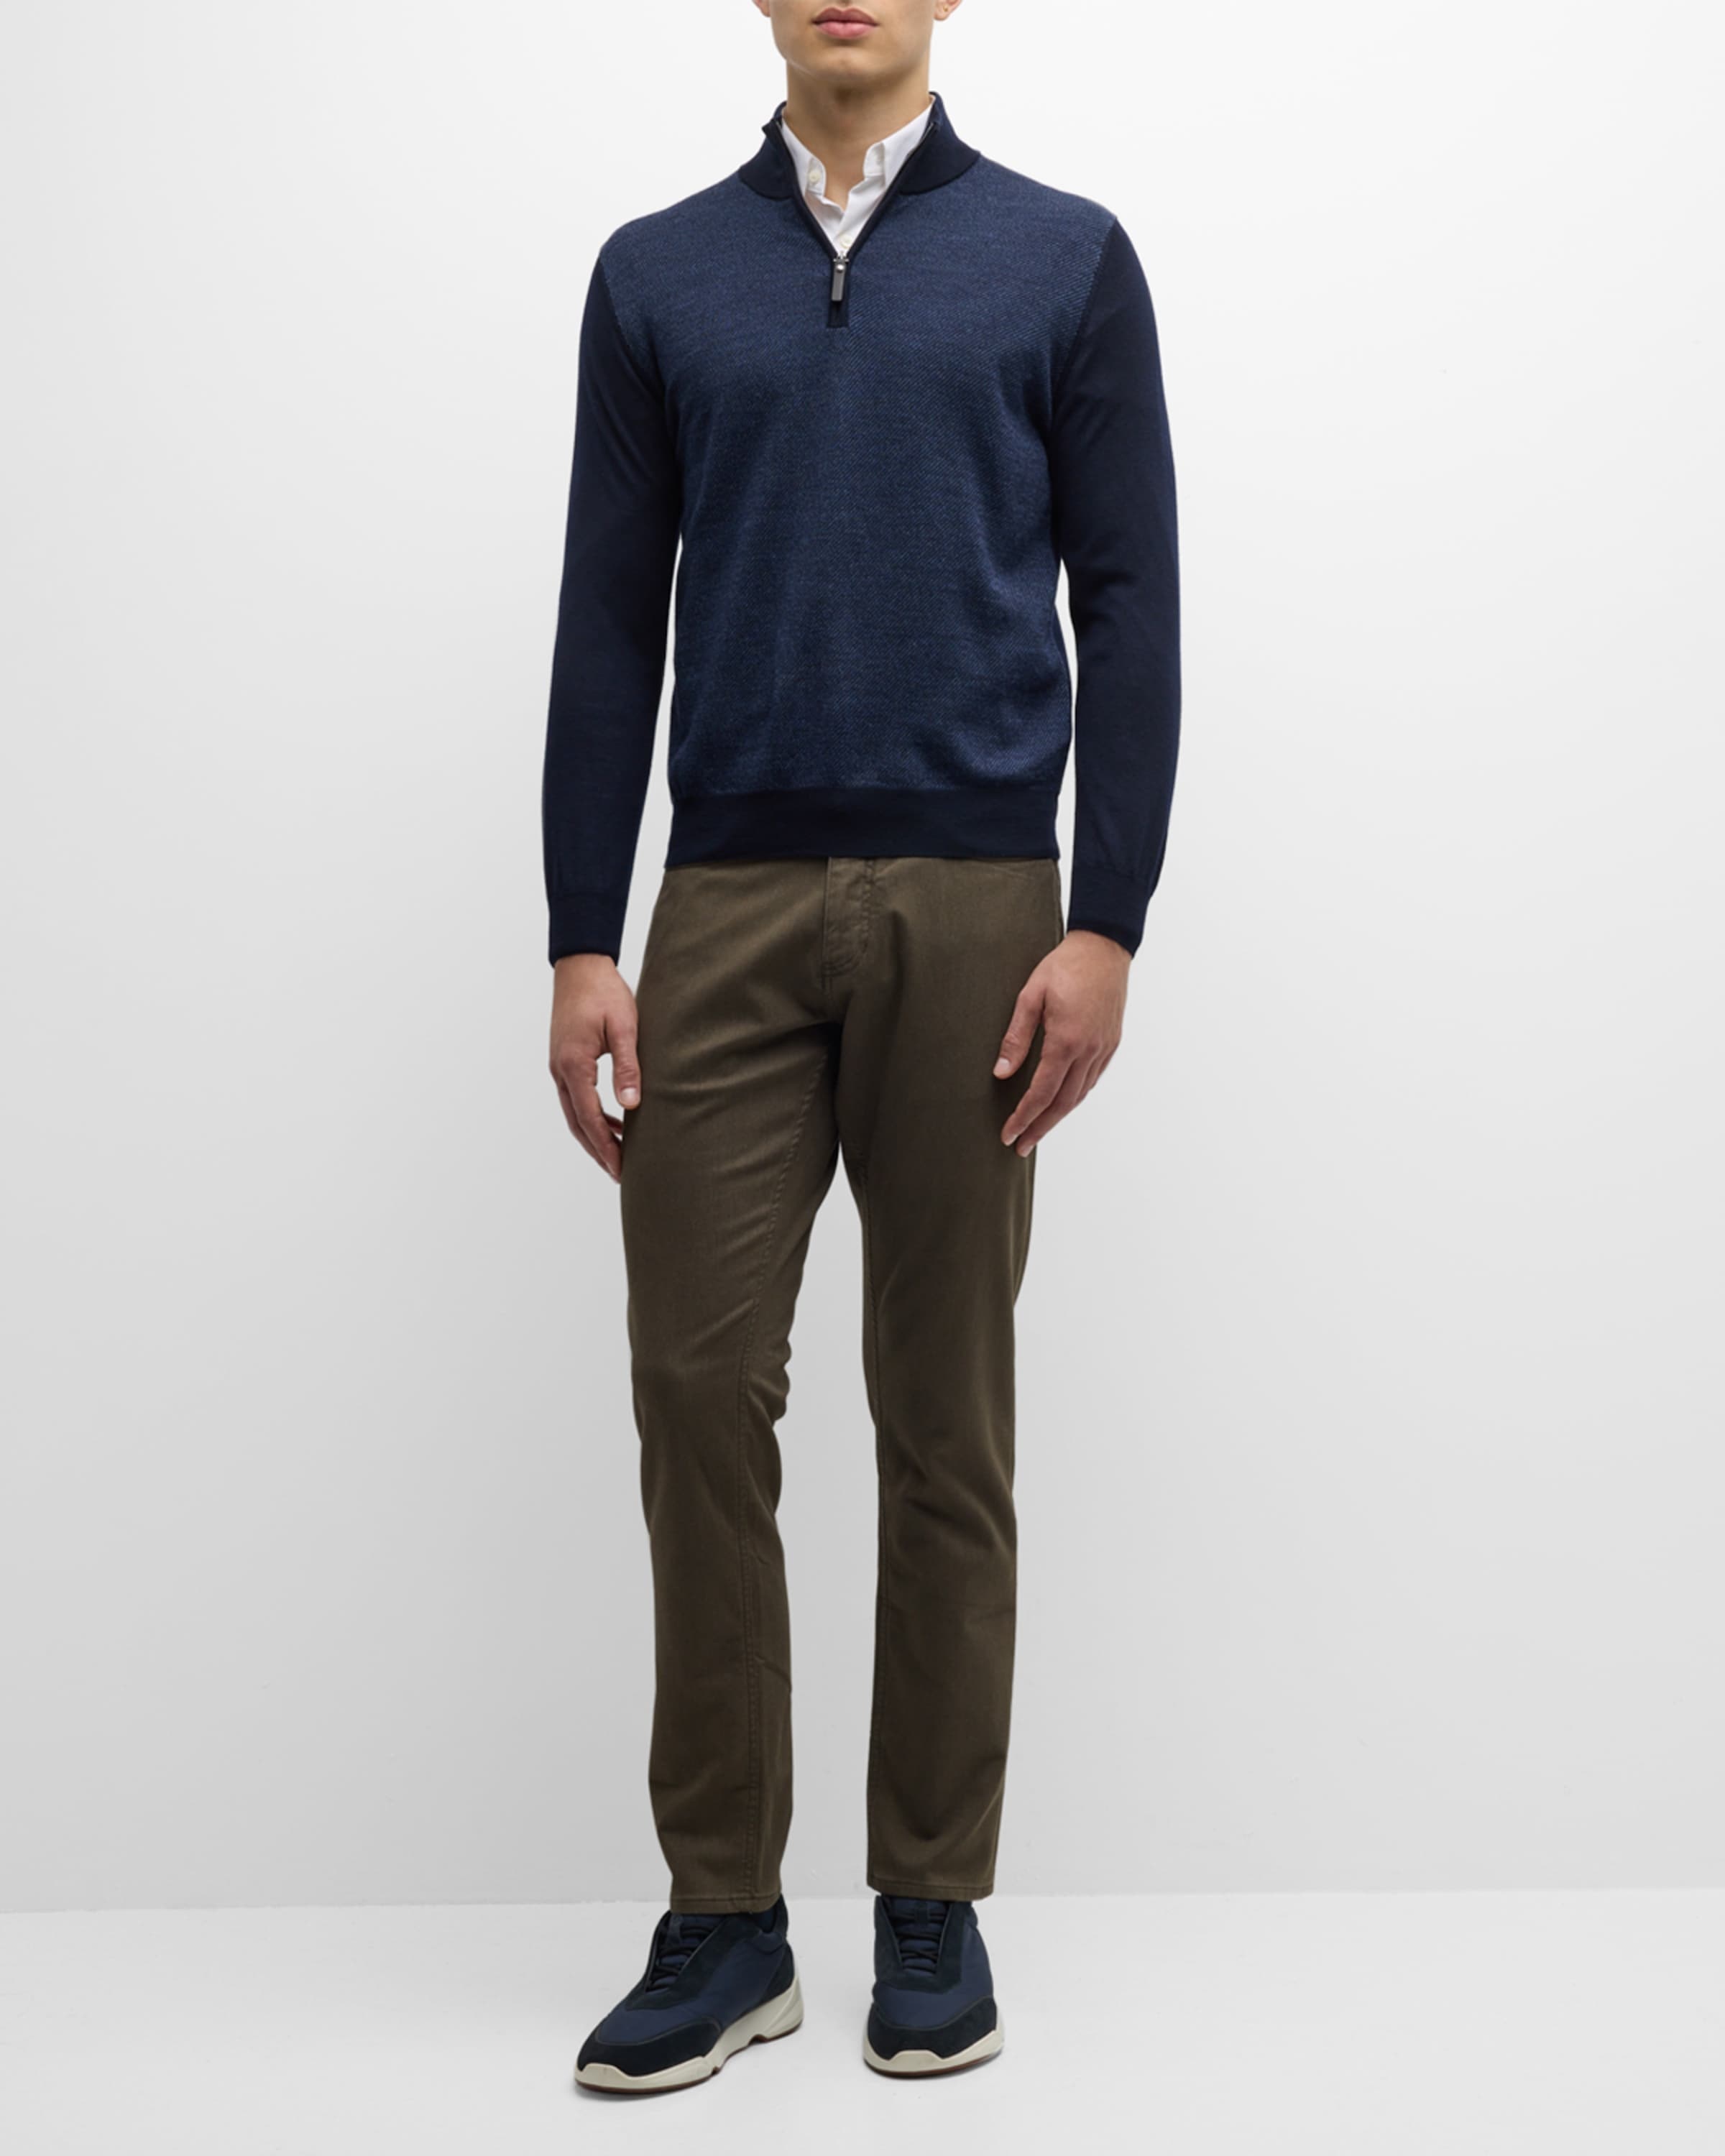 Men's Wool Quarter-Zip Sweater - 3